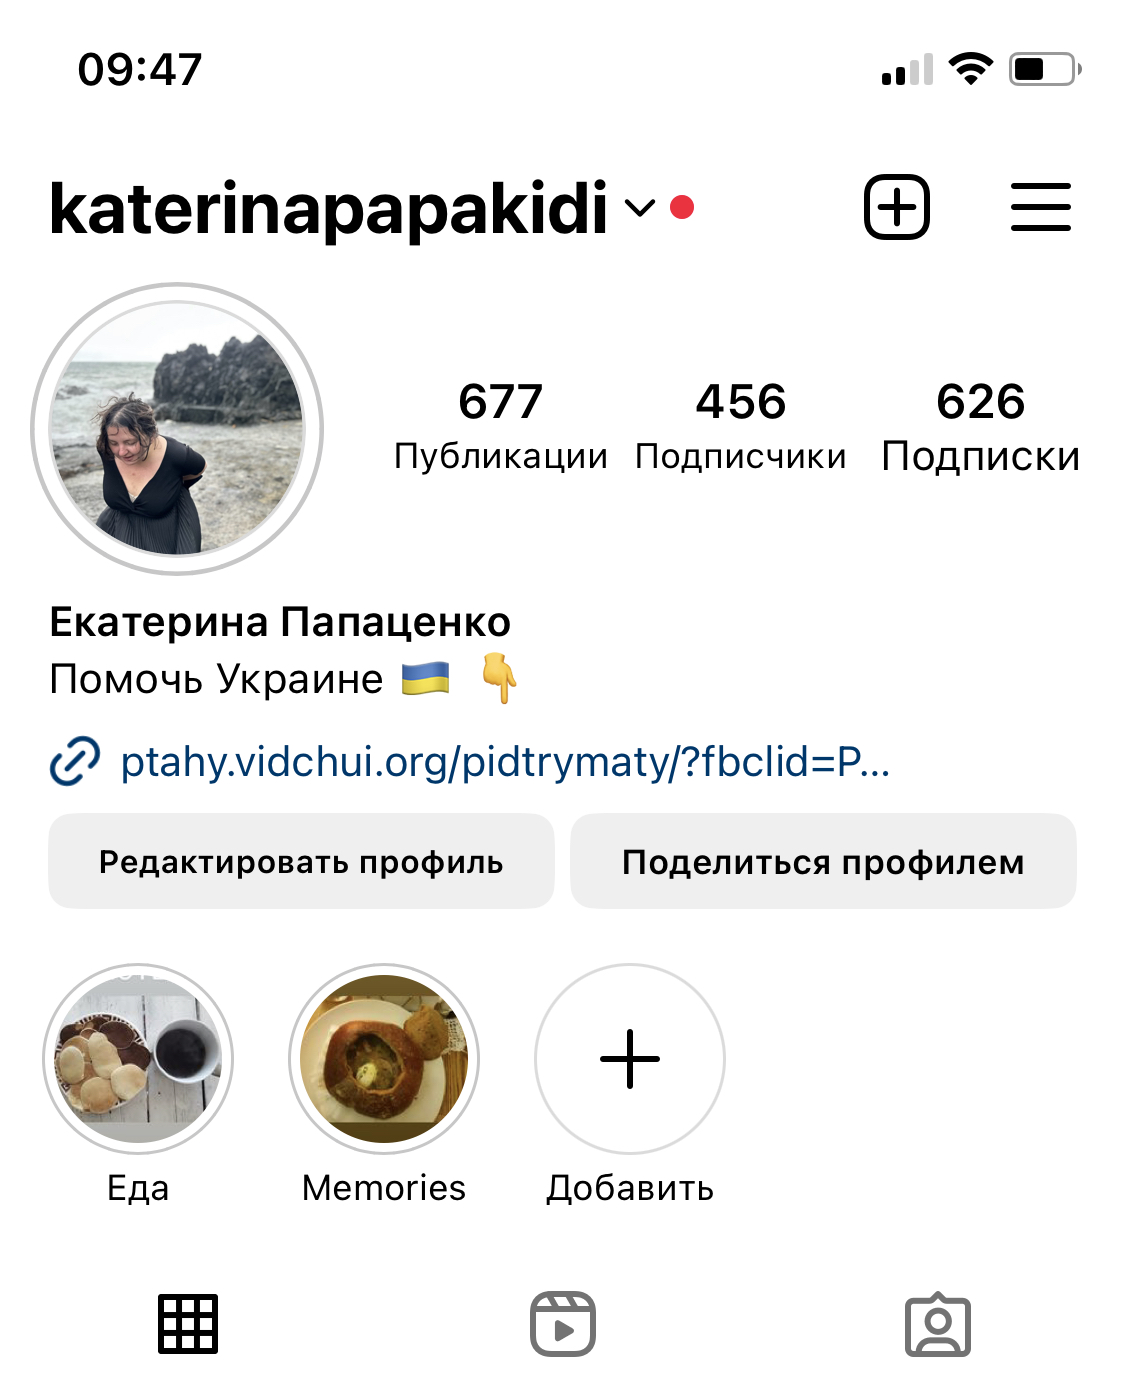 Начало перехода на бизнес-профиль в Instagram